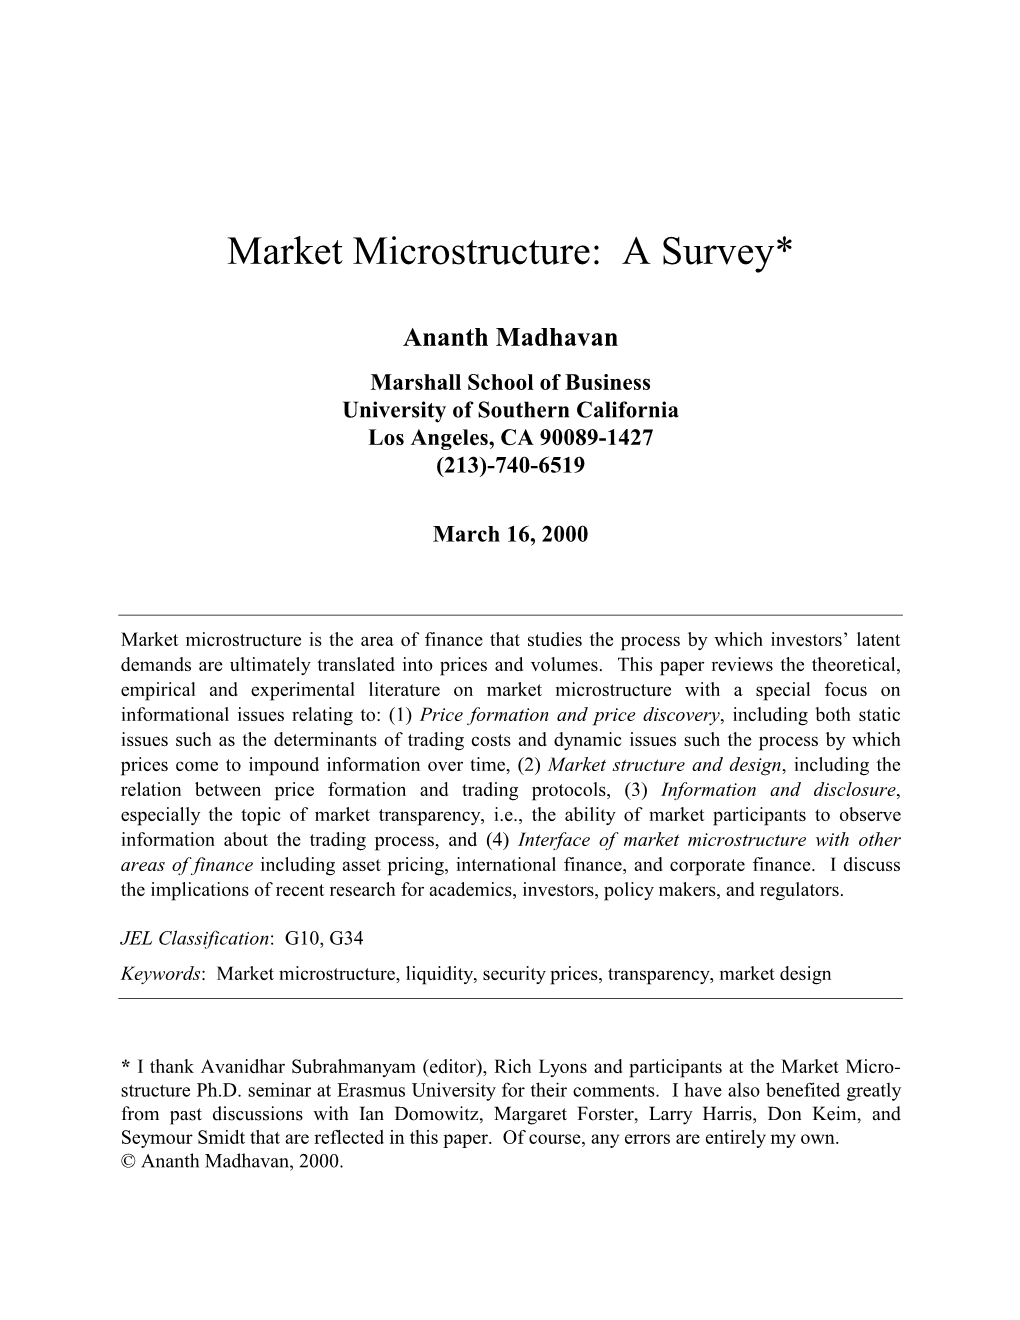 Market Microstructure: a Survey*